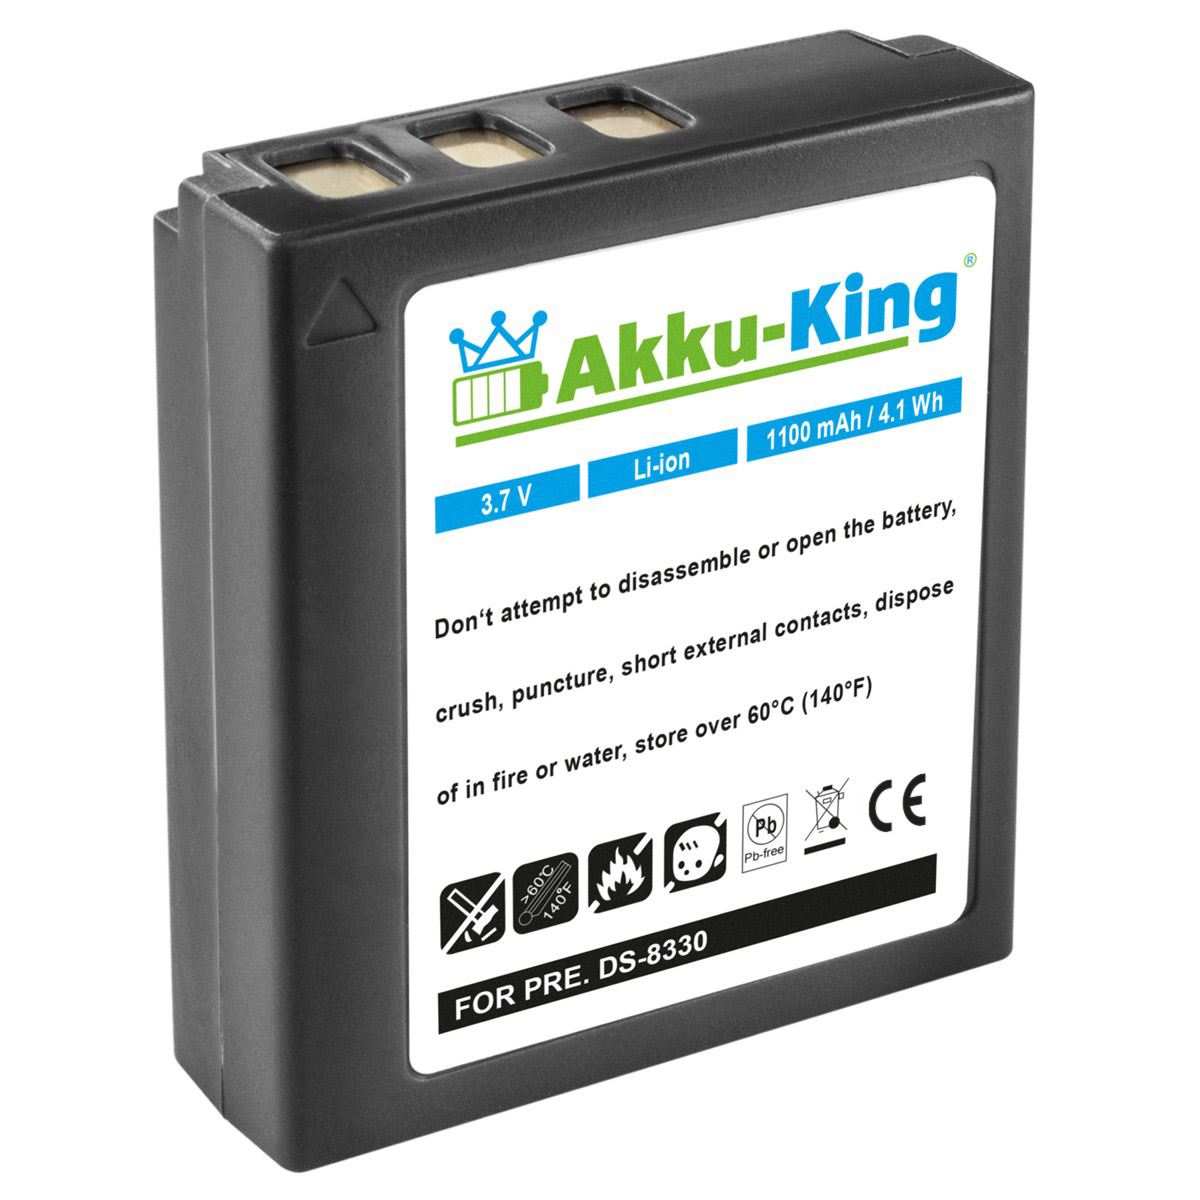 kompatibel Volt, DS-8330 3.7 mit Kamera-Akku, Li-Ion Premier Akku 1100mAh AKKU-KING